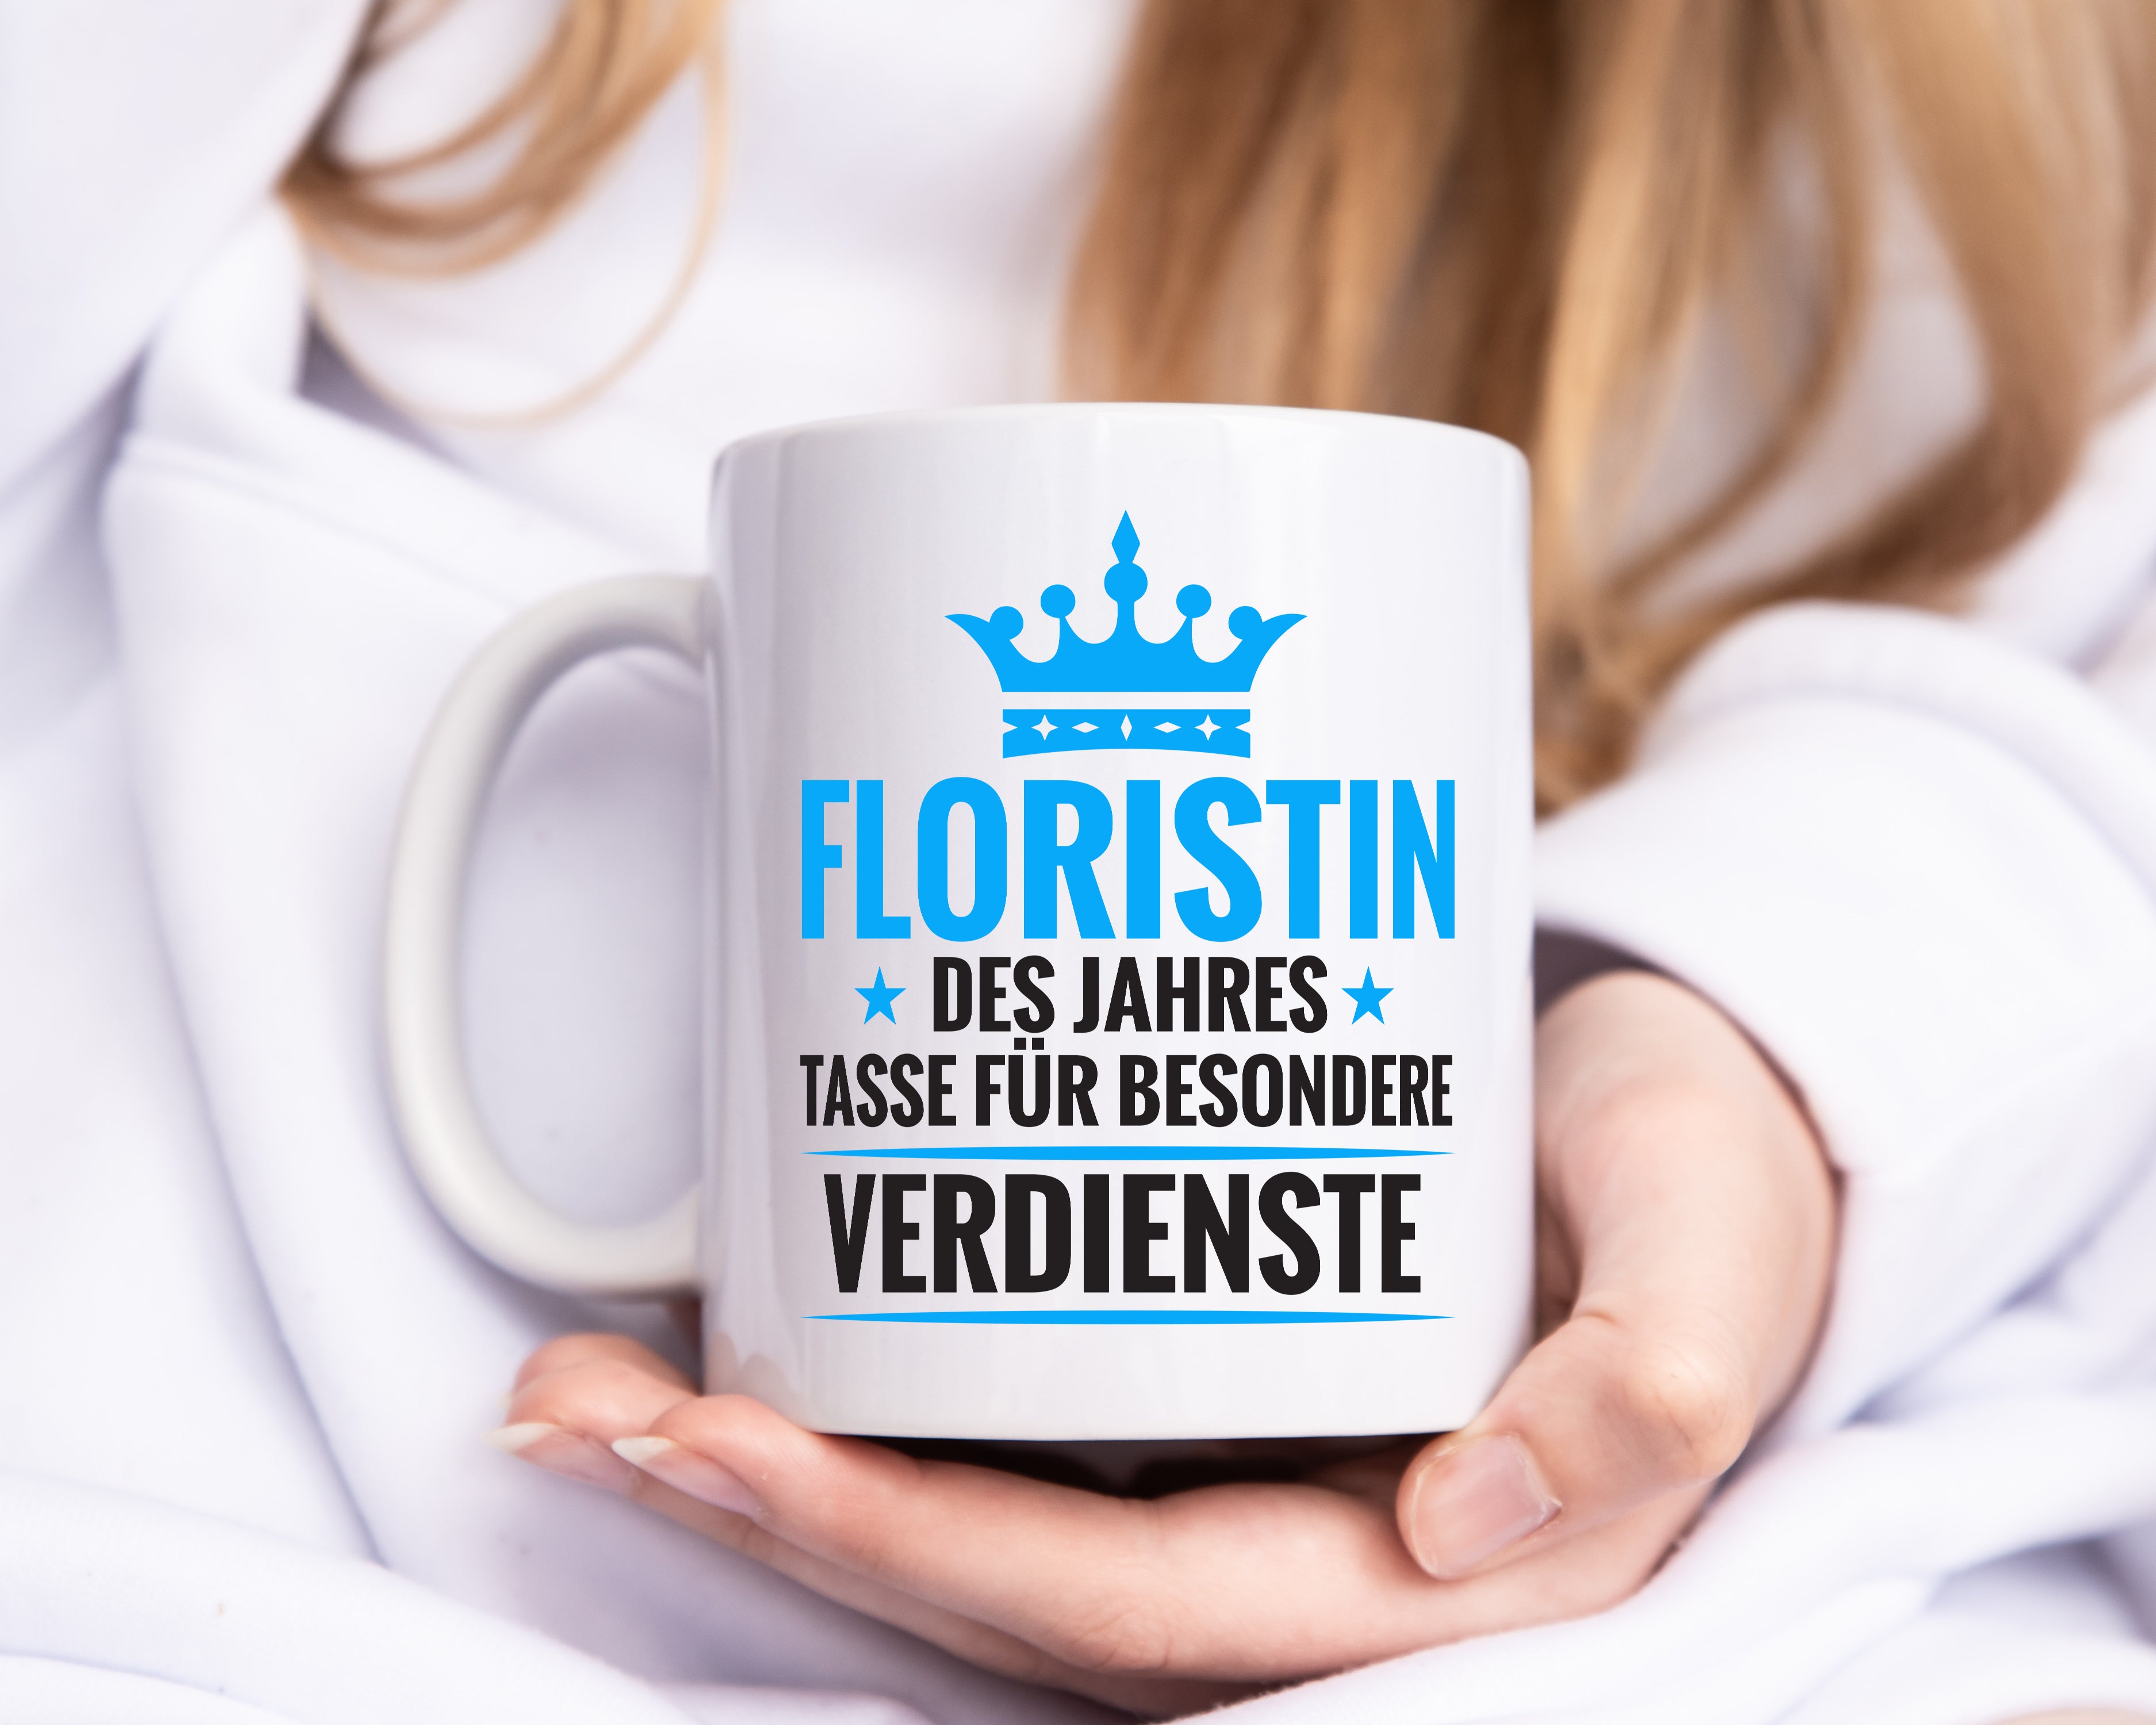 Besonderer Verdienst: Floristin | Blumen Verkäuferin - Tasse Weiß - Kaffeetasse / Geschenk / Familie